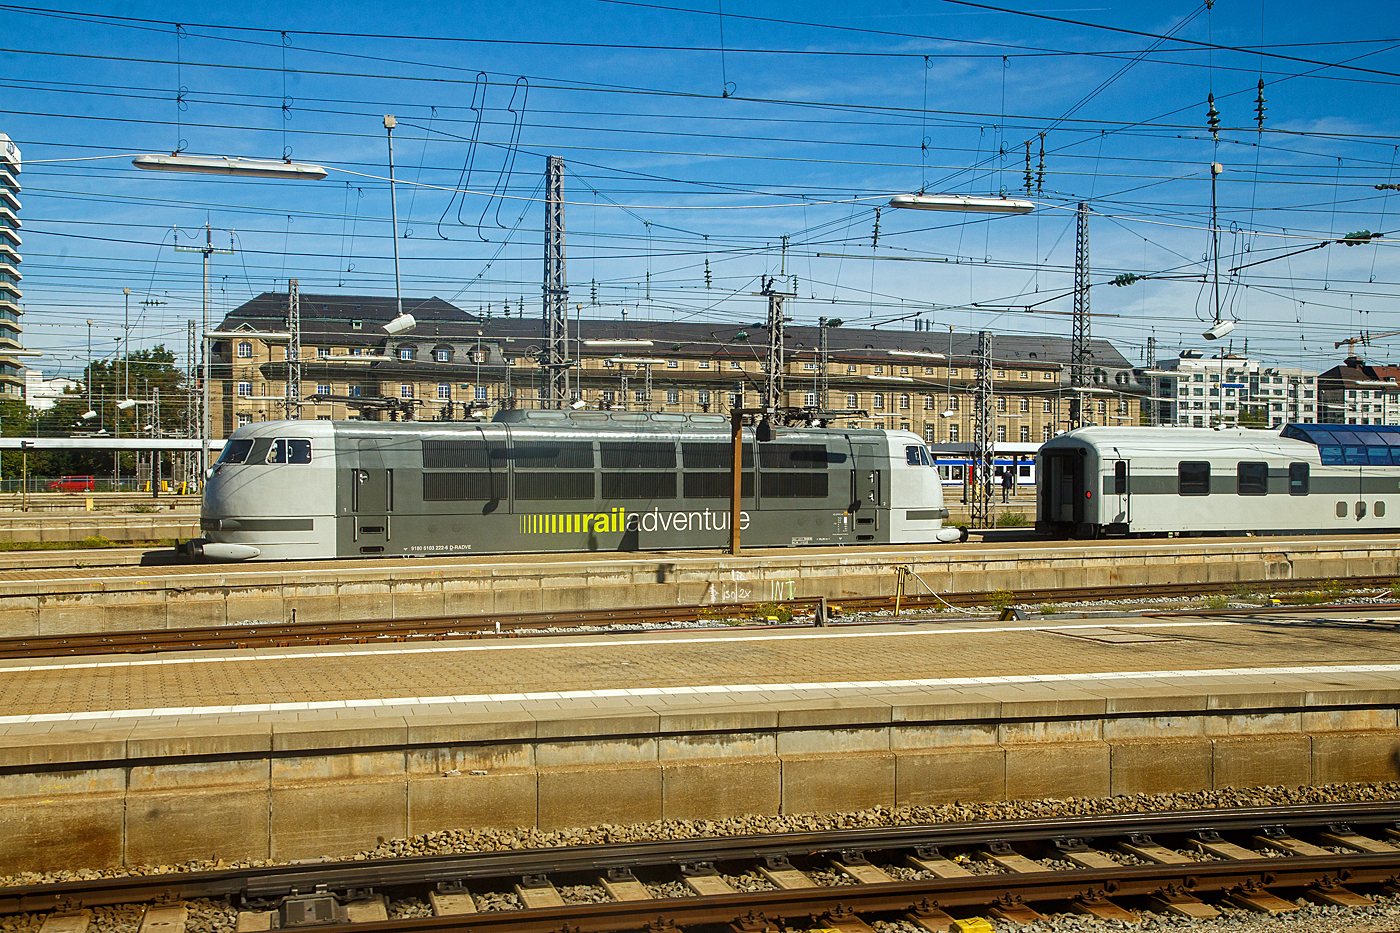 Leider nicht mehr in purpurrot/beige (in der TEE-Lackierung), aber immer noch schnell und stark, die 103 222-6 (91 80 6103 222-6 D-RADVE) der RailAdventure, ex DB 103 222-6, ex DB 750 003-6, ist am 13 September 2022 beim Hauptbahnhof München abgestellt. Rechts steht noch das LUXON DomeCar CH-RADVE 61 85 89-90 003-3 der Gattung SRmz der Rail Adventure, der Aussichtswagen ist der ex DB 10 433 AD4üm-62 für den Fernschnellzug Rheingold (F-Zug), der 1962 von Wegmann & Co. in Kassel gebaut wurde. Ab 1966 DB 10 533 AD4ümh 101und später DB 61 80 88-80 003-8 ADmh 101.

Die 103.1 (lange Ausführung mit Pufferverkleidung) wurde 1973 bei Krauss-Maffei AG in München unter der Fabriknummer 19635 gebaut, der Elektrische Teil ist von Siemens. Als 103 222-6 fuhr sie bis 1989 bei der DB (Deutsche Bundesbahn), bis dahin hatte sie eine Höchstgeschwindigkeit von 200 km/h. Im September 1989 wurde die 103 222-6 mit Getriebe sowie den Schnellfahrdrehgestellen der ursprünglich für 250 km/h zugelassenen 103 118-6 ausgerüstet und zu Versuchszwecken für eine Höchstgeschwindigkeit von 280 km/h zugelassen. Gleichzeitig wurde sie nach dem Umbau wegen des experimentellen Charakters in 750 003-6 als Bahndienstfahrzeug umgezeichnet. Seit Ende Mai 2005 wird die Lokomotive wieder als 103 222-6 bezeichnet, ist aber nach wie vor betriebsfähig und ebenfalls noch immer bis 280 km/h zugelassen. Die 103 222 wurde 2014 für 551 000 € an die Firma Railadventure versteigert. Im selben Jahr erhielt die Maschine erneut eine Hauptuntersuchung mit Neulackierung im Corporate Design von Rail Adventure im Werk Dessau.